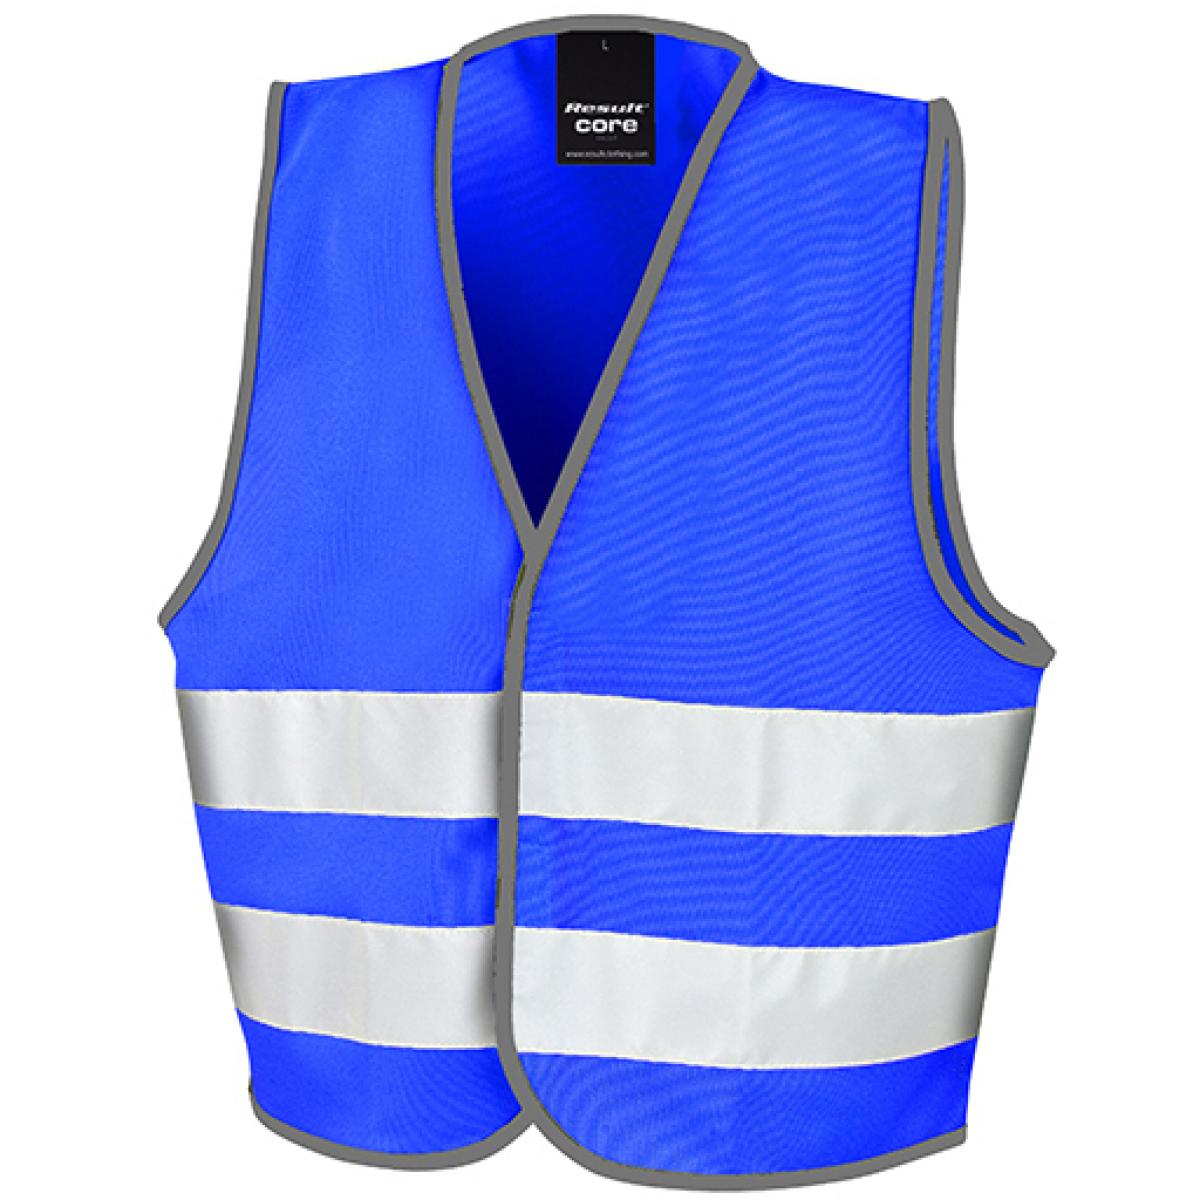 Hersteller: Result Core Herstellernummer: R200J Artikelbezeichnung: Kinder Sicherheitsweste - Junior Safety Vest Farbe: Royal